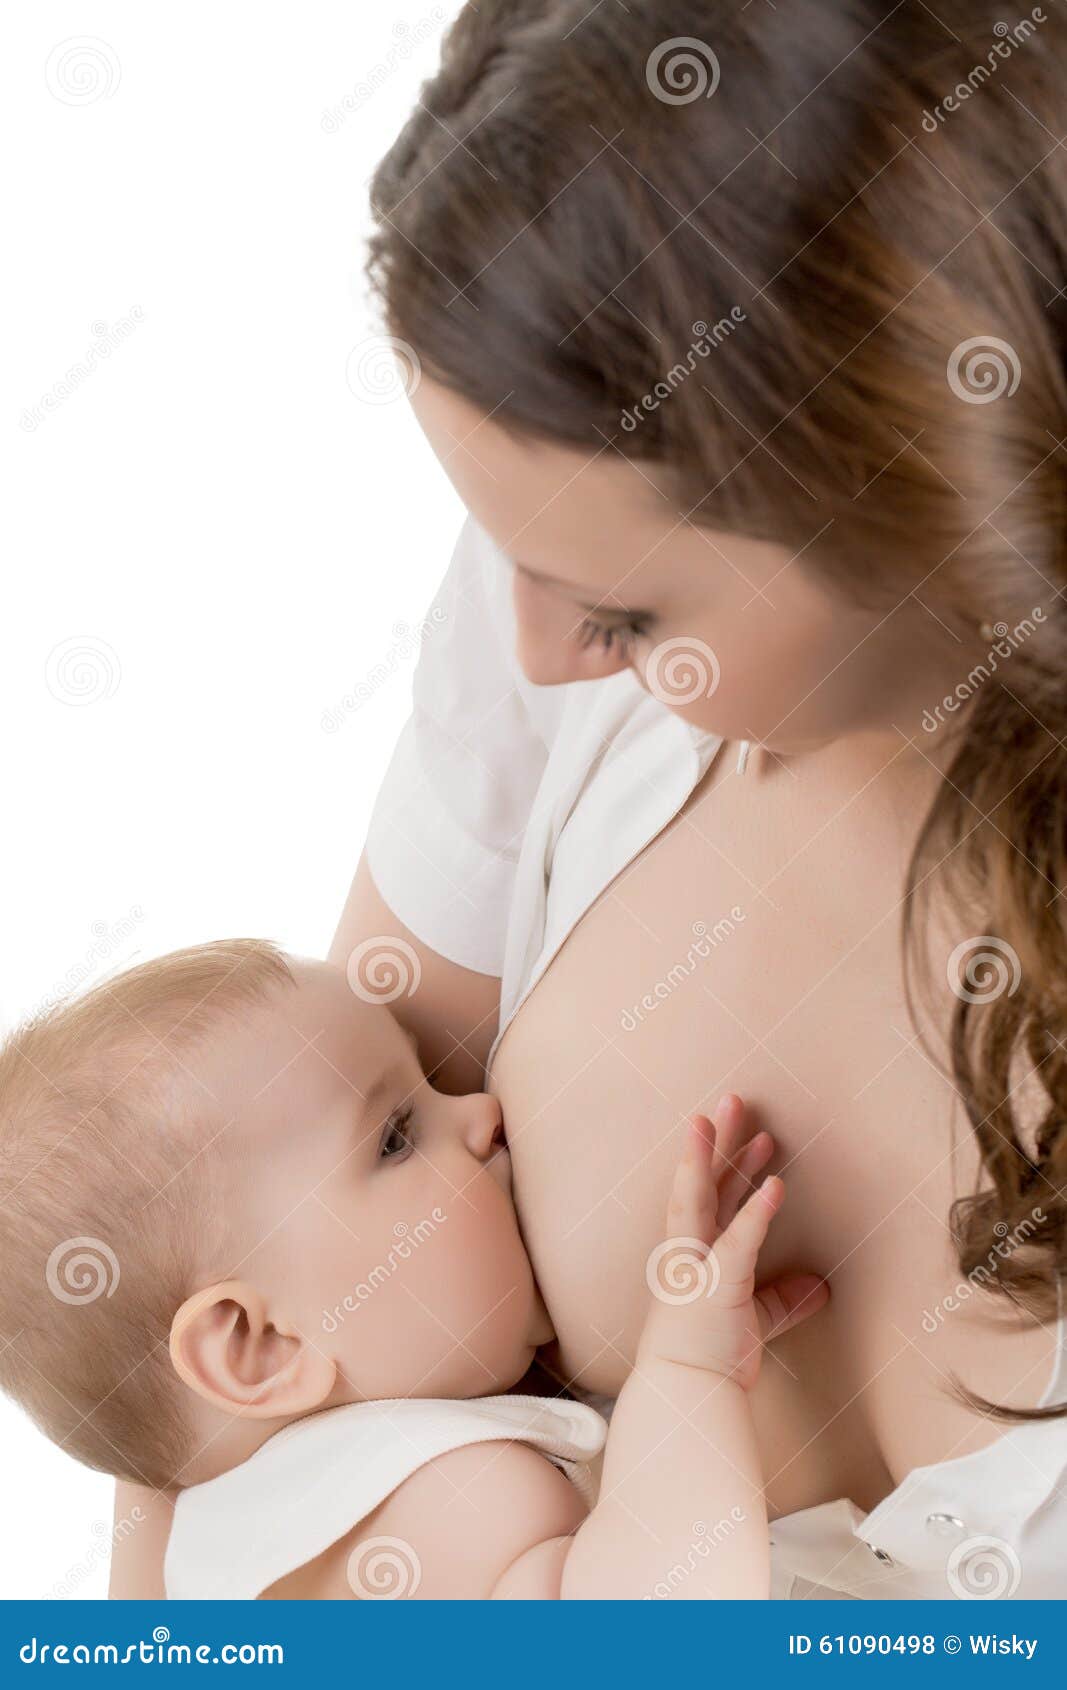 кормит ребенка грудью порно фото 79